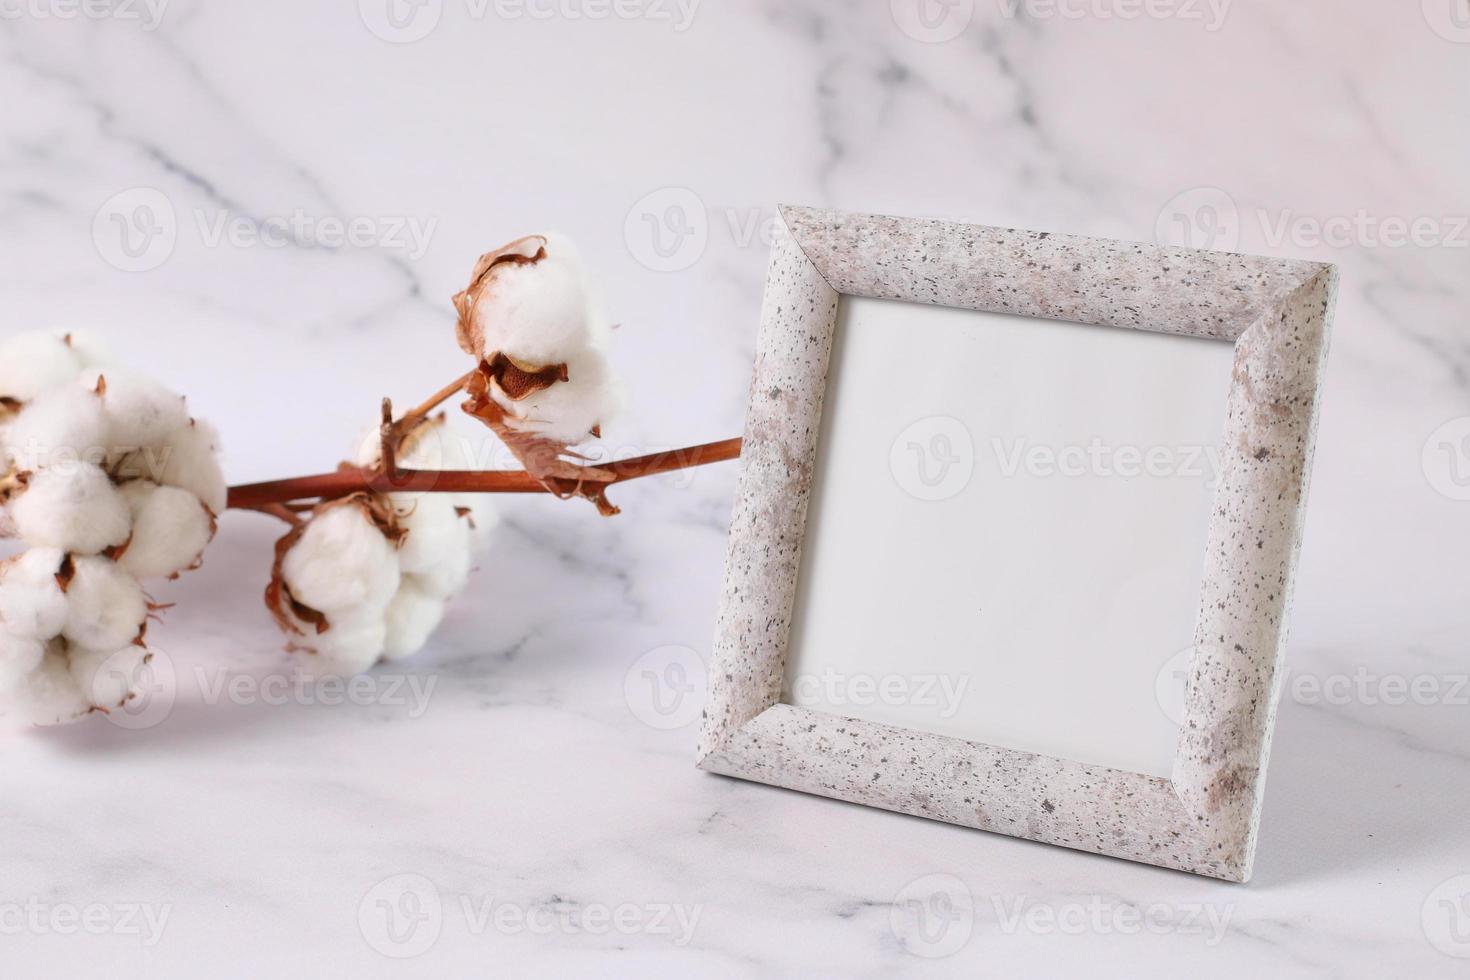 moldura de foto simular textura de mármore, flor de algodão